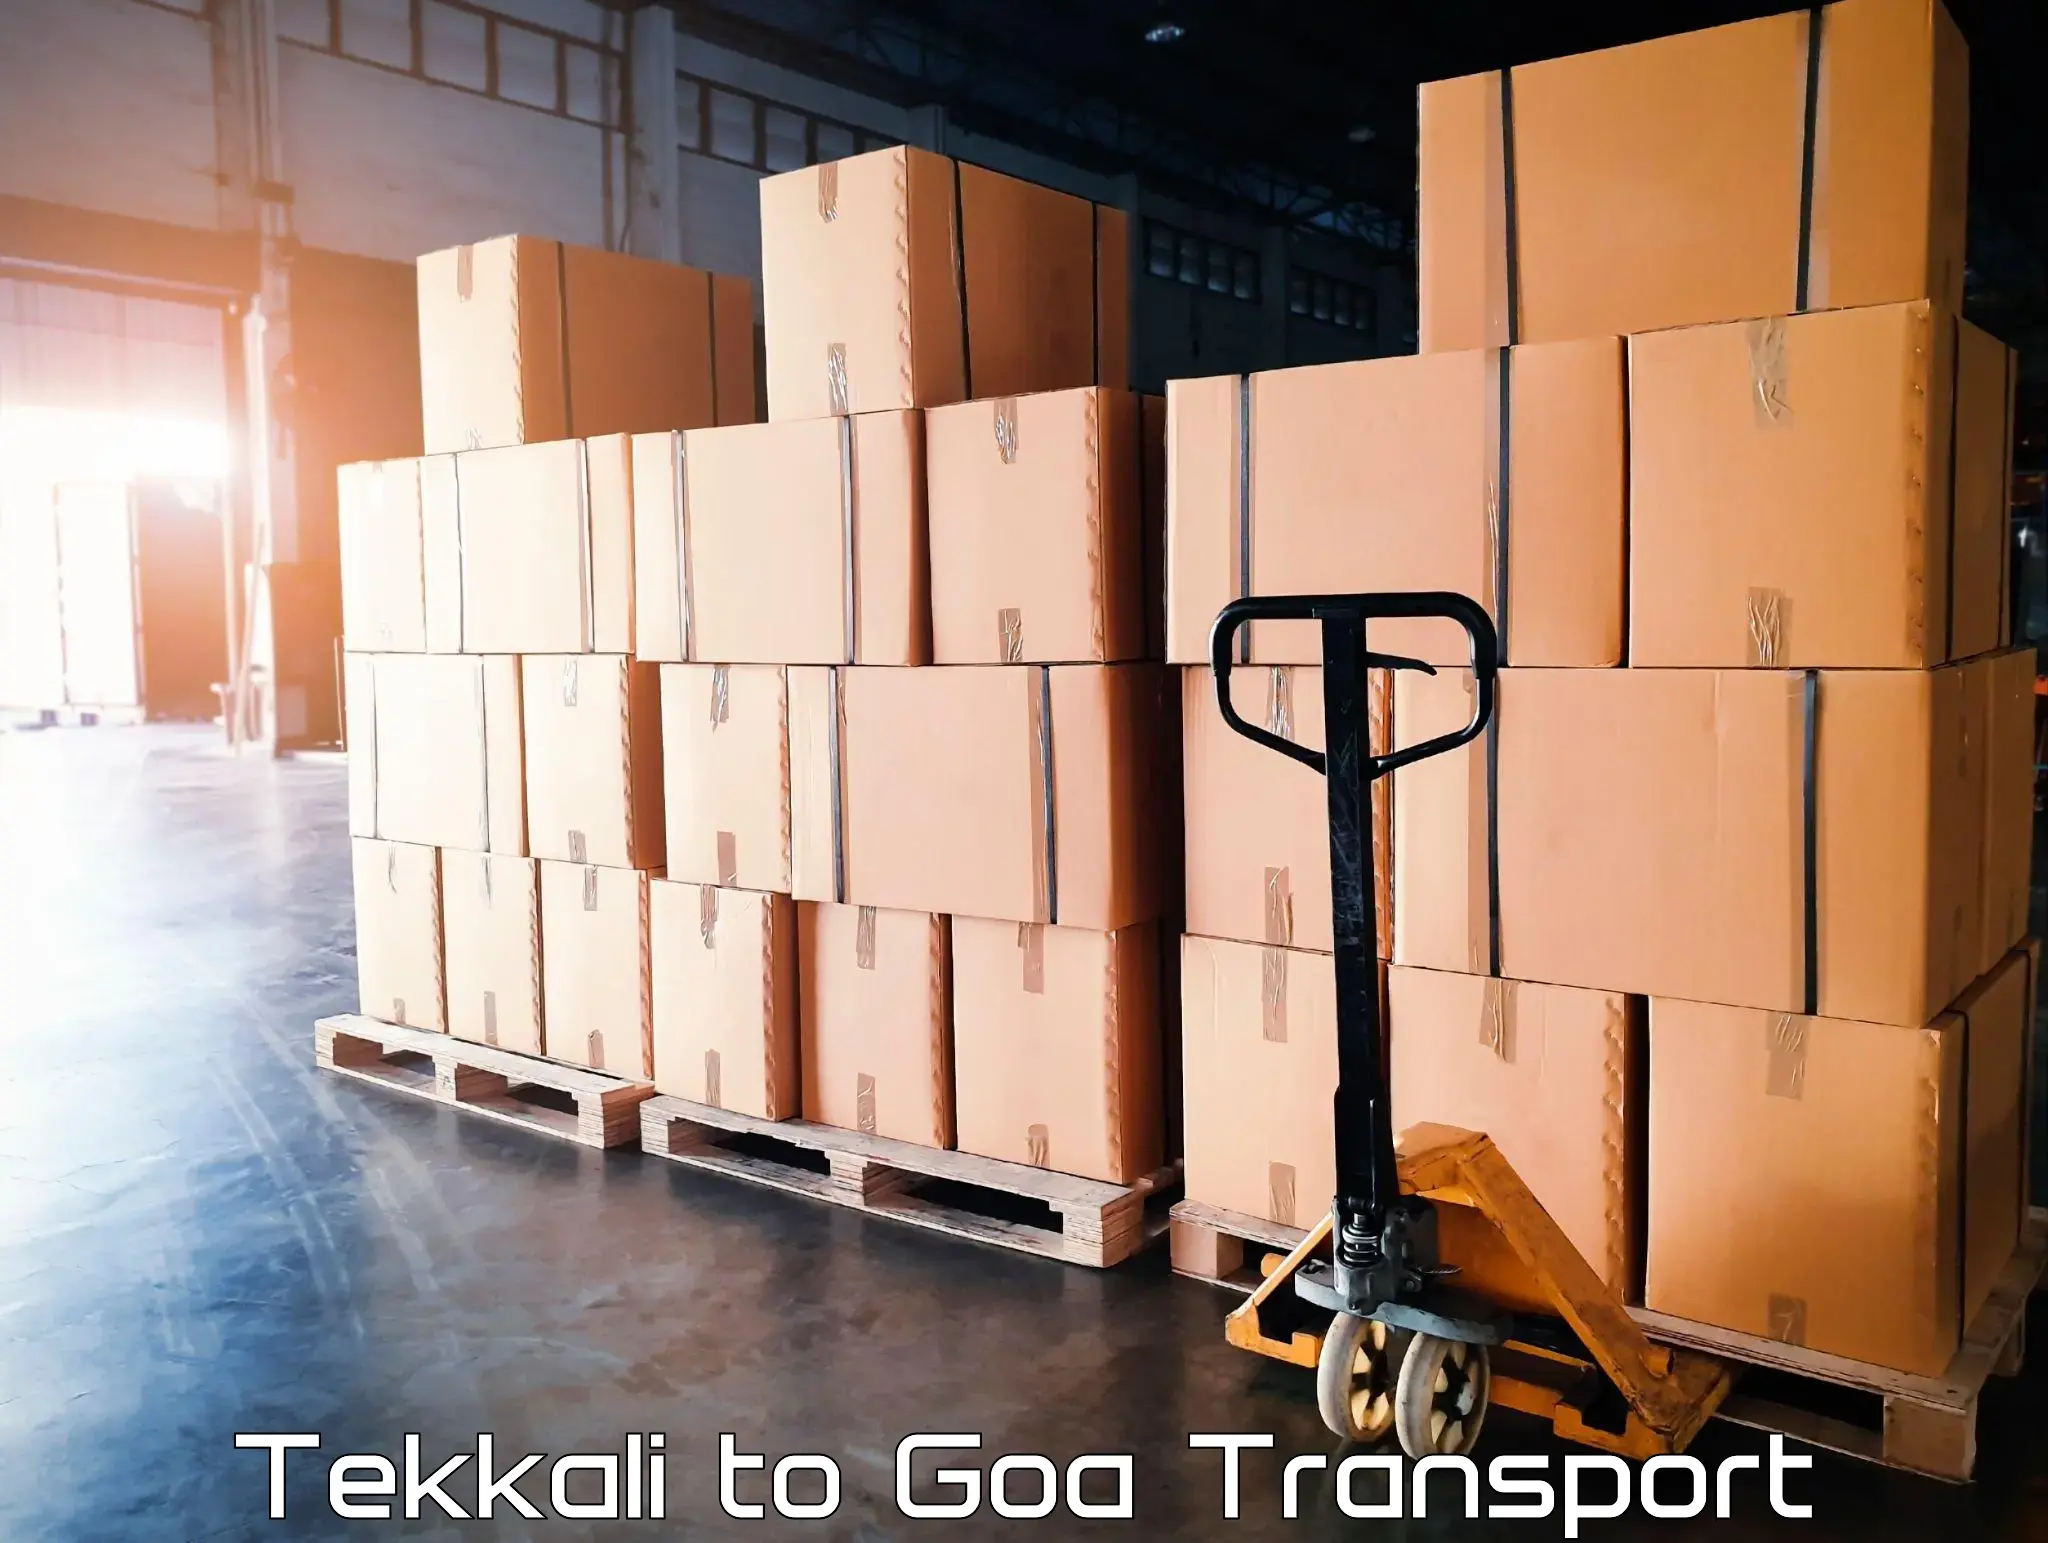 Nearby transport service Tekkali to Canacona